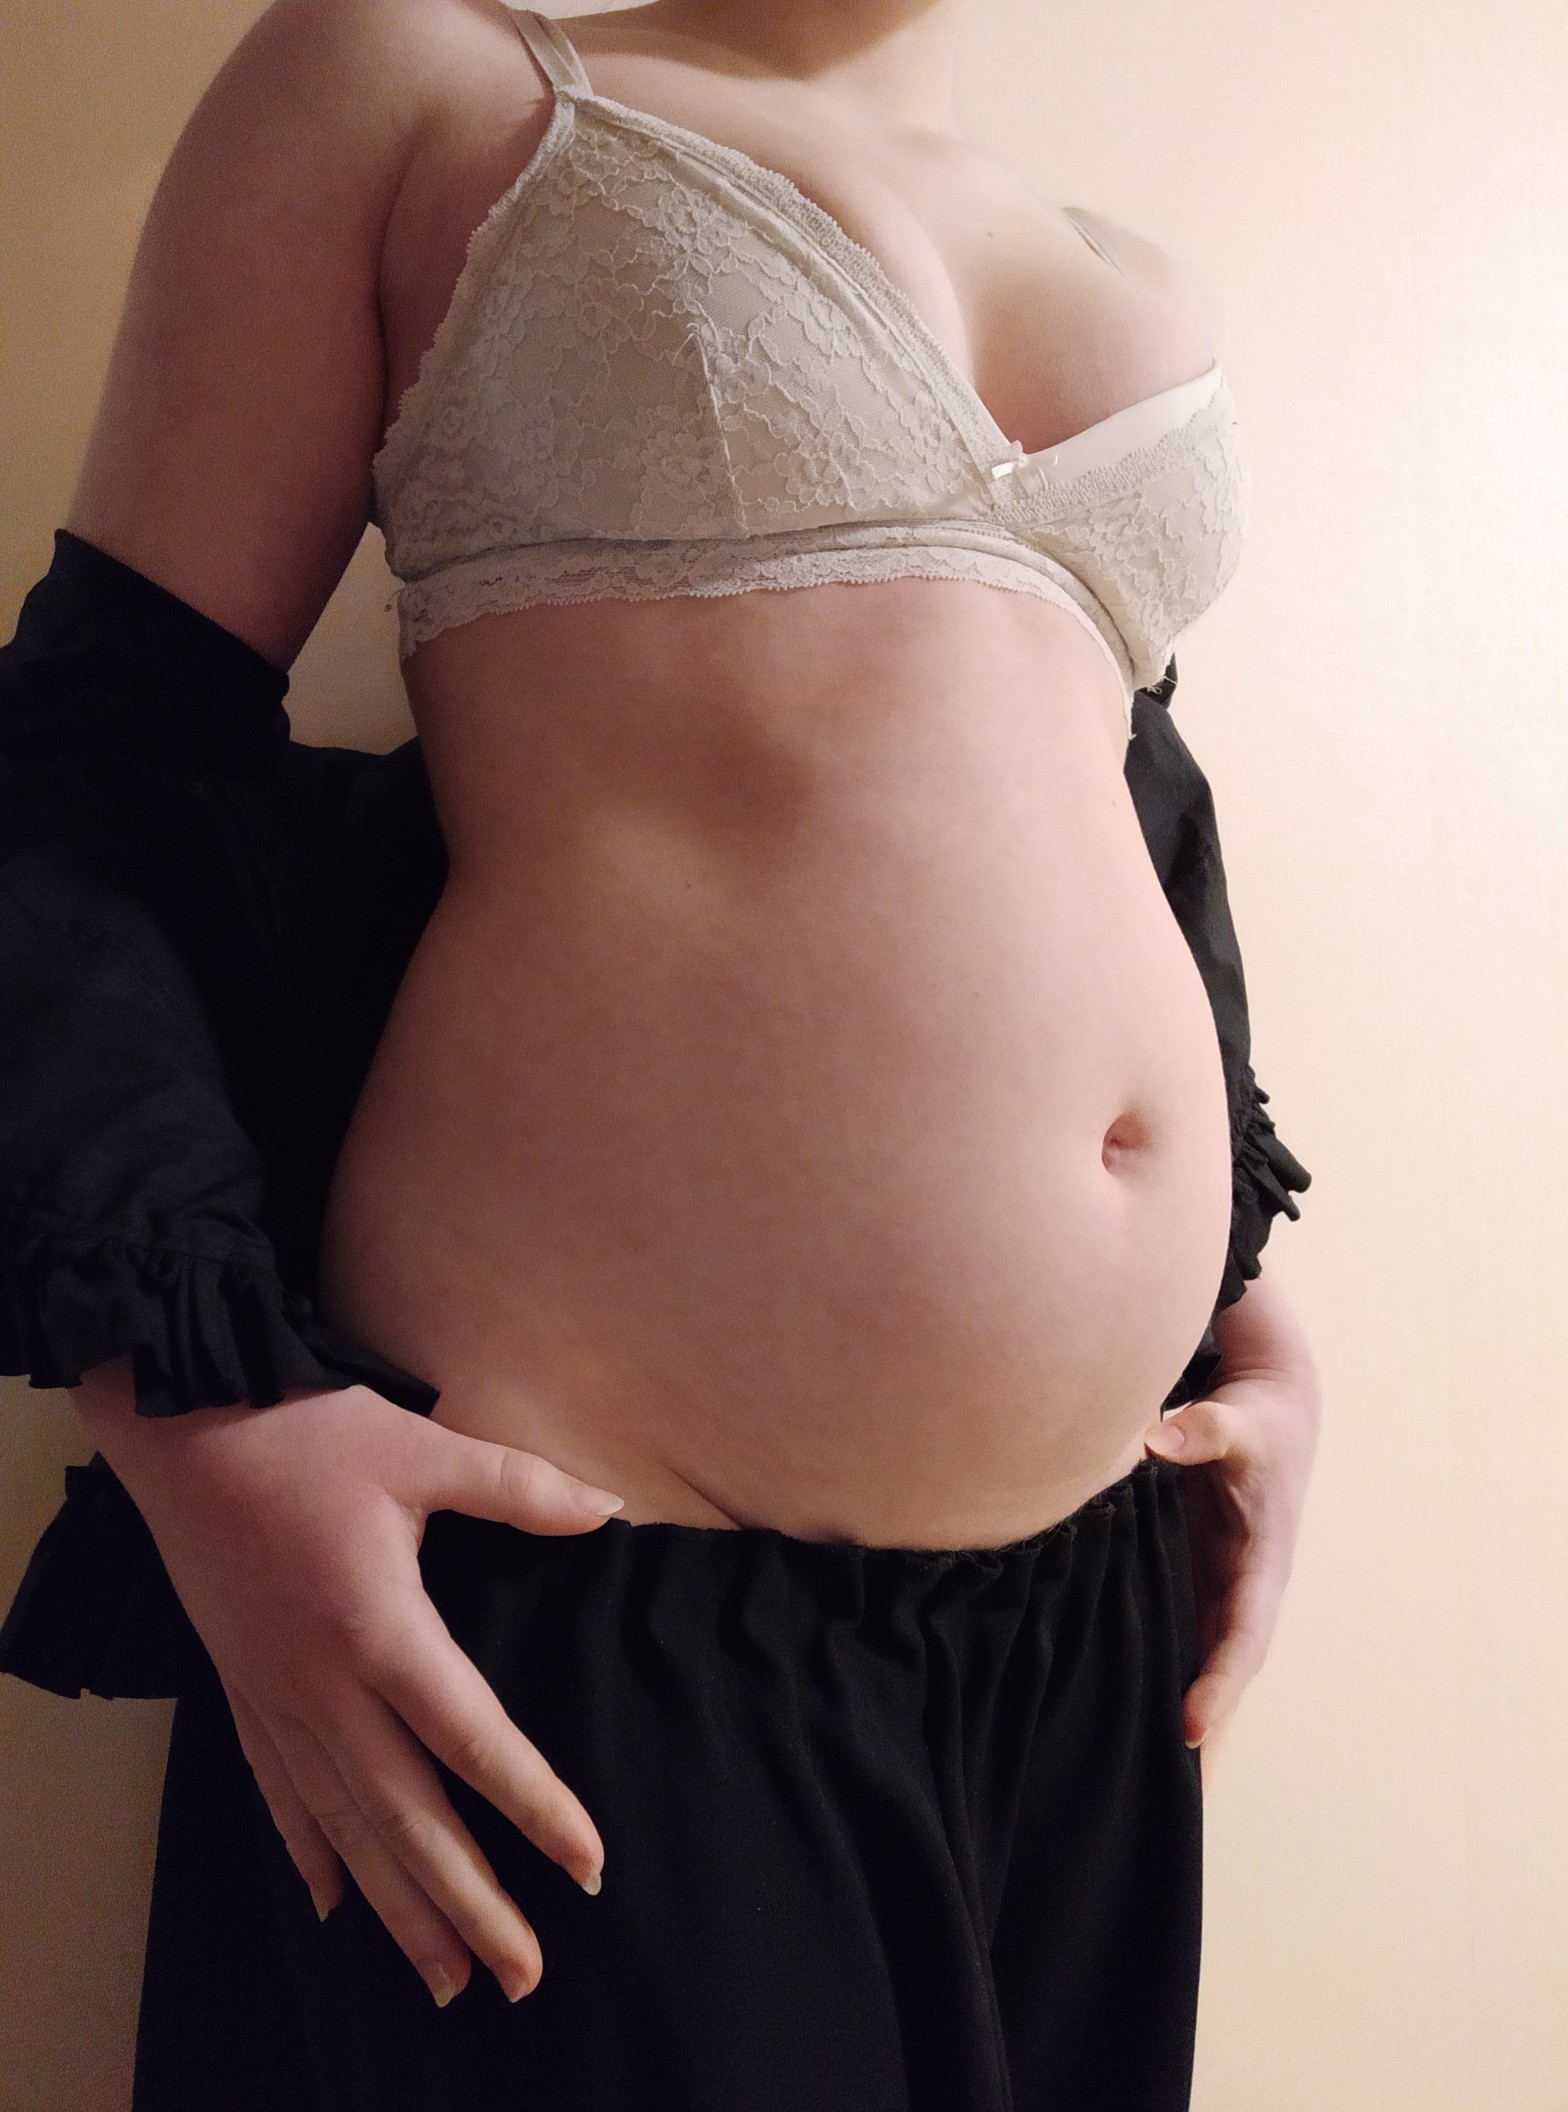 Porn photo bellabloatbelly:my tummy is so swollen, it